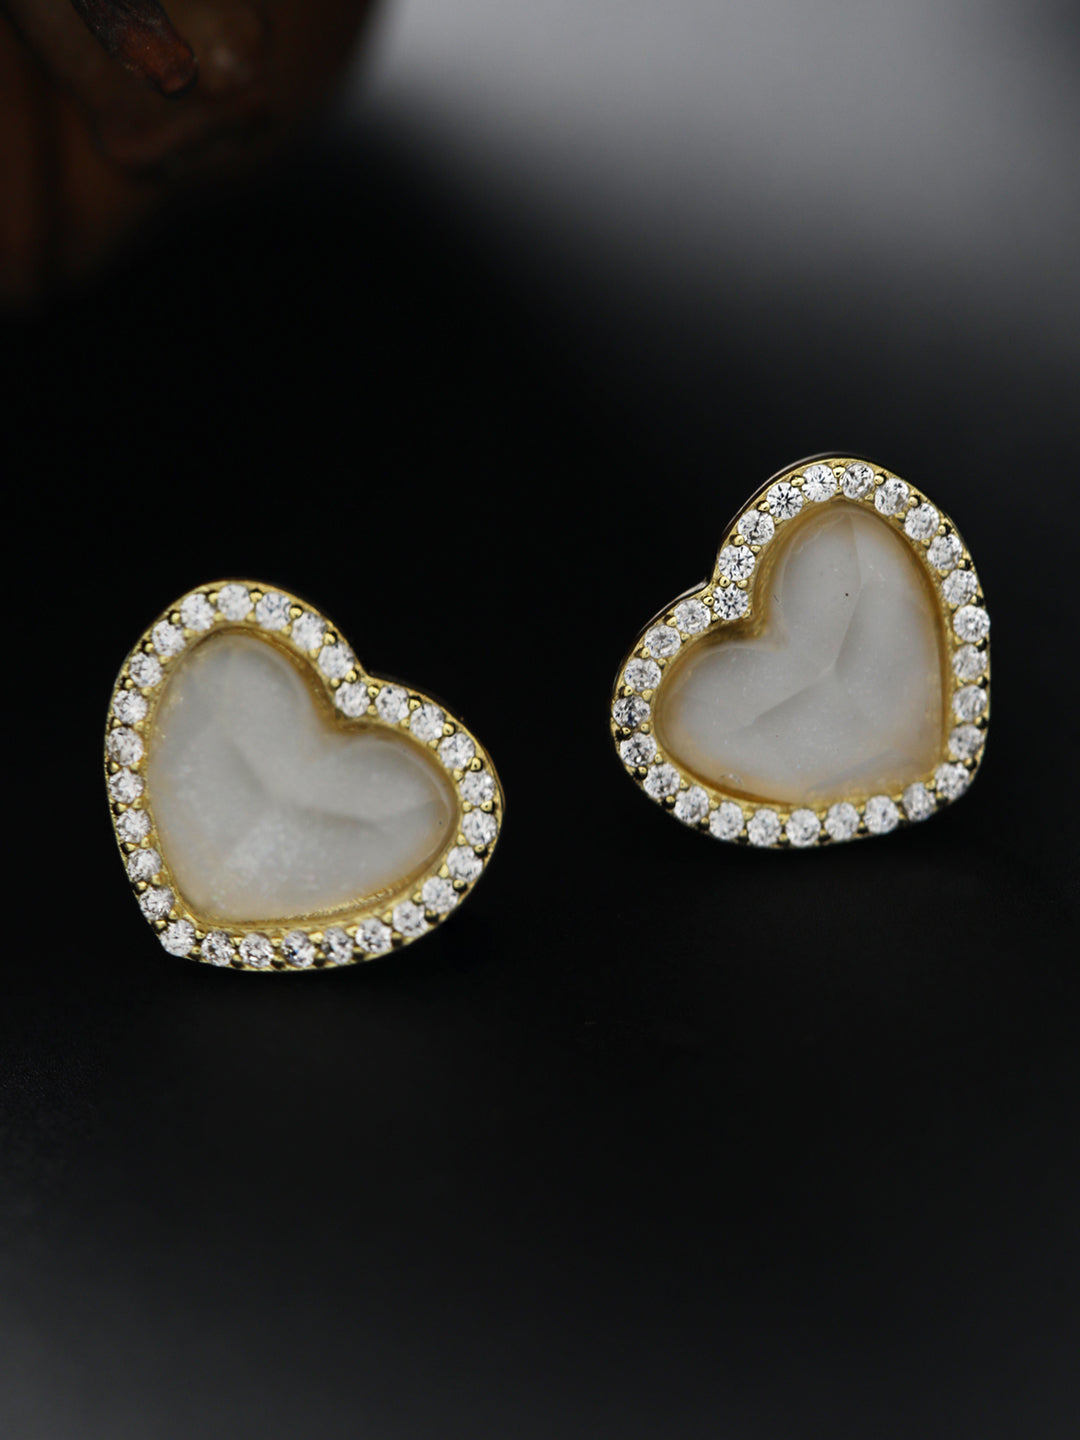 Sheer by Priyaasi Heart American Diamond Gold-Plated Sterling Silver Earrings